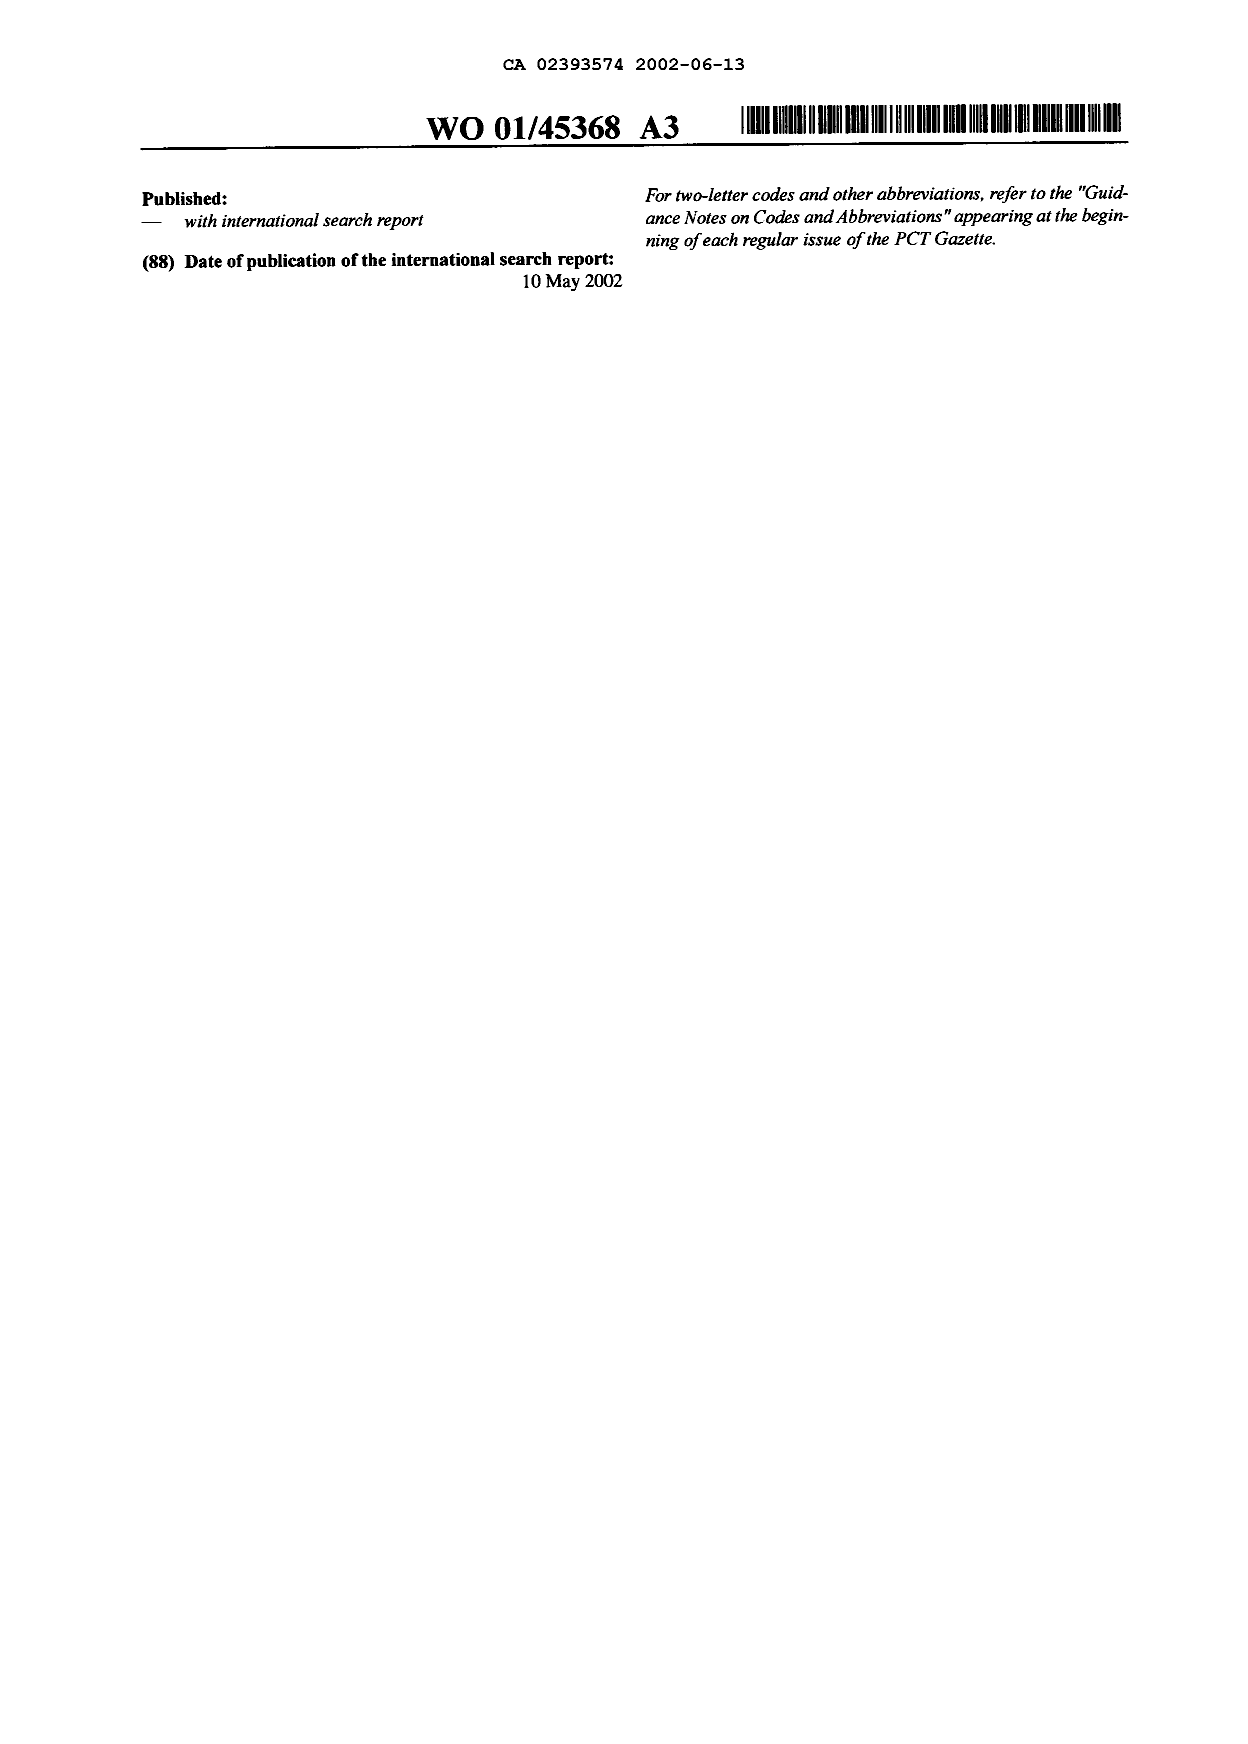 Document de brevet canadien 2393574. Abrégé 20011213. Image 2 de 2